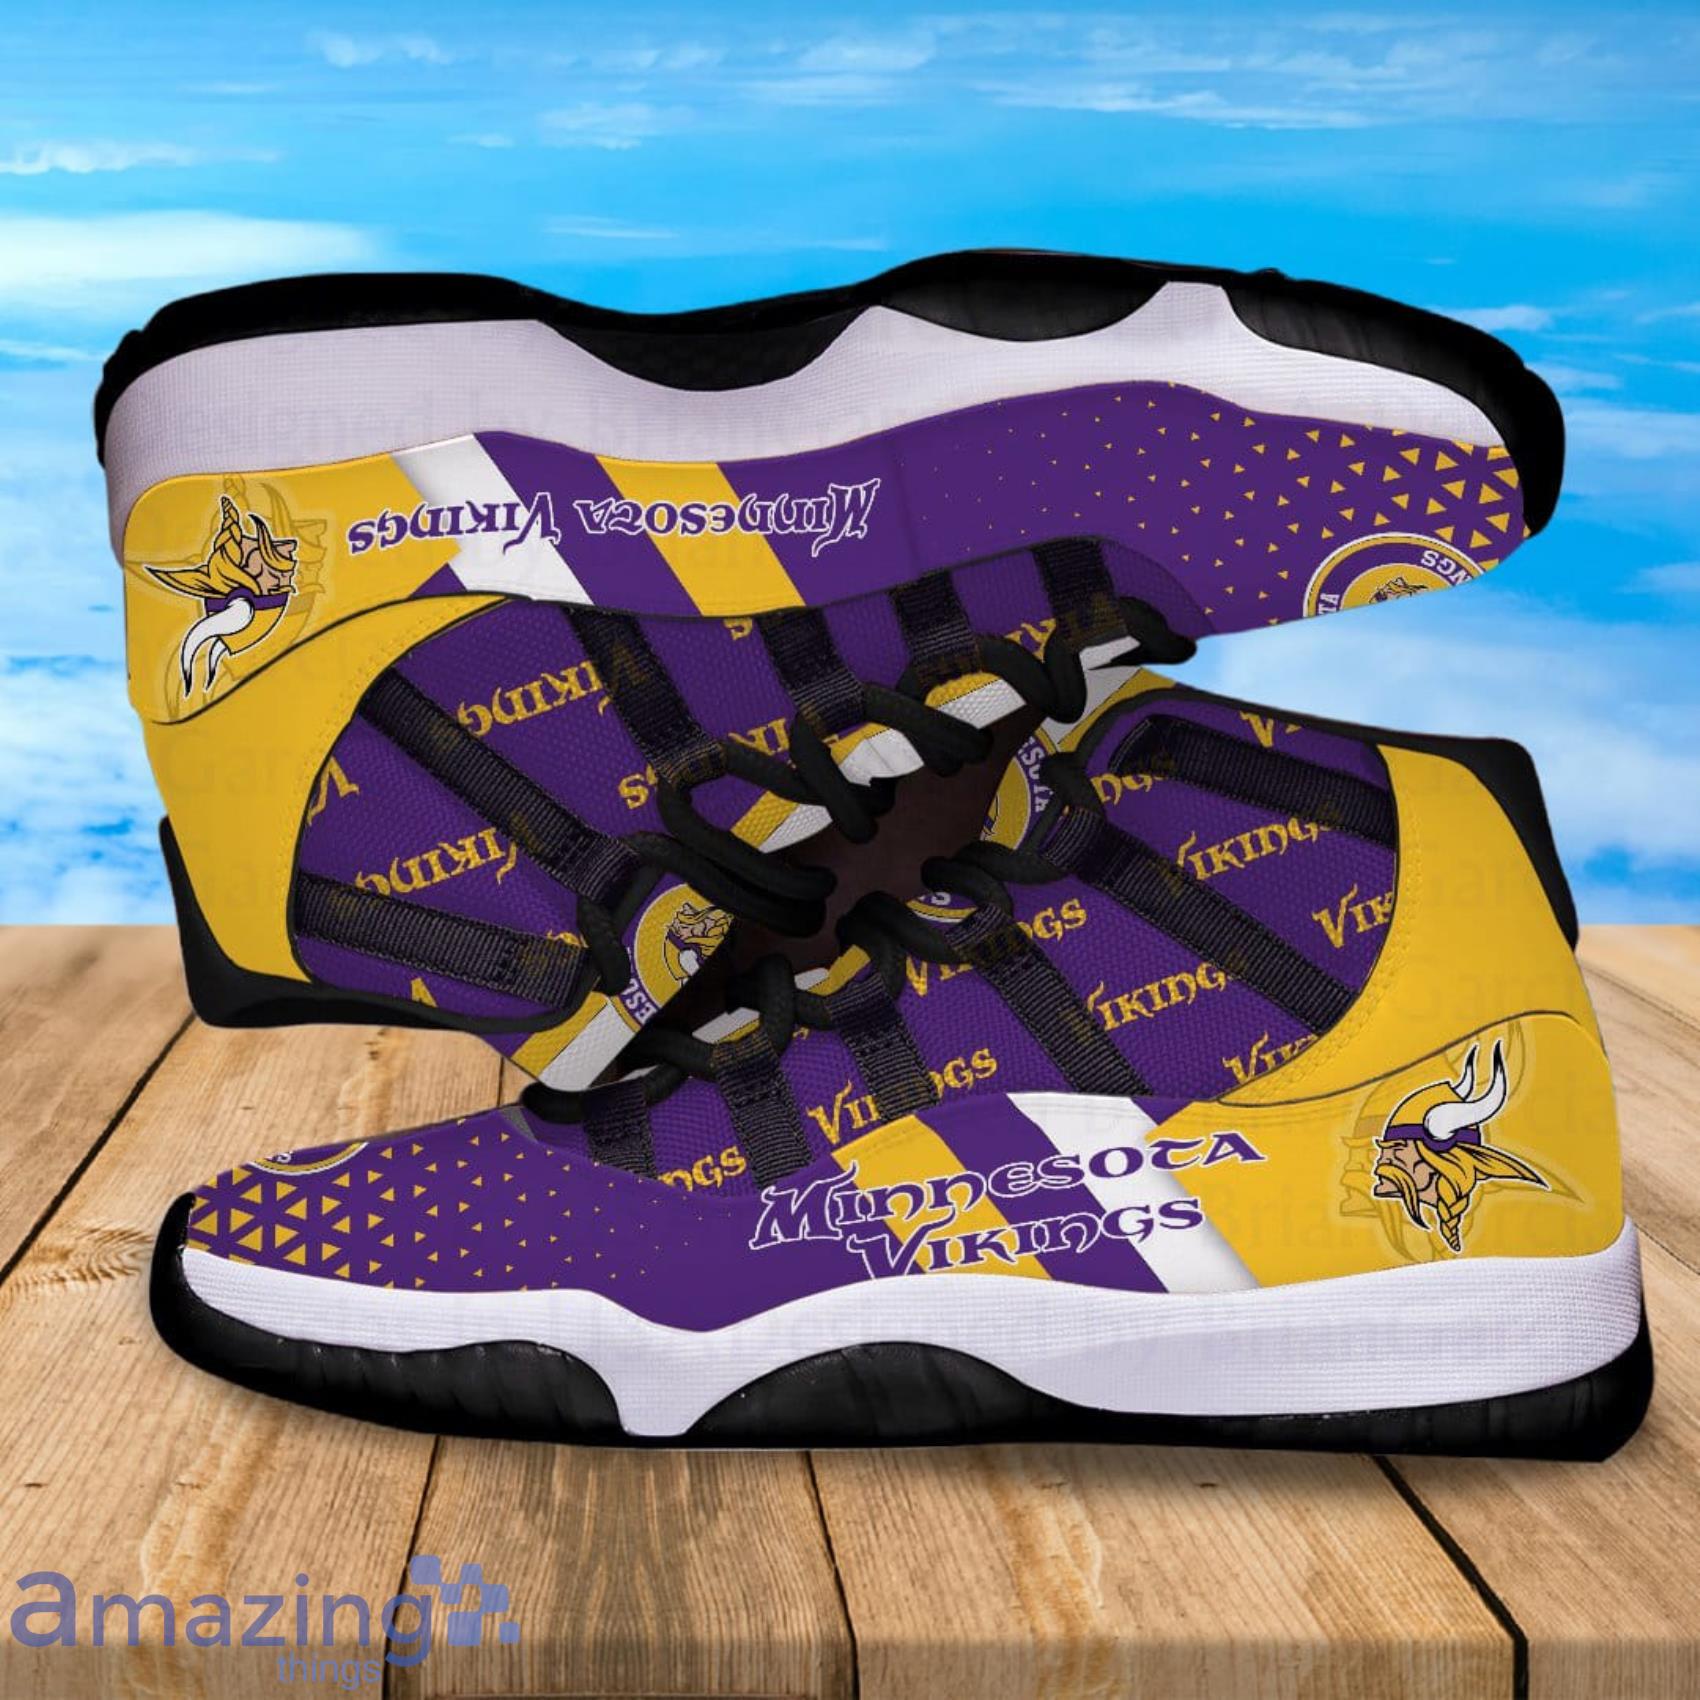 Minnesota Vikings Full Print Air Jordan 11 Shoes For Men And Women